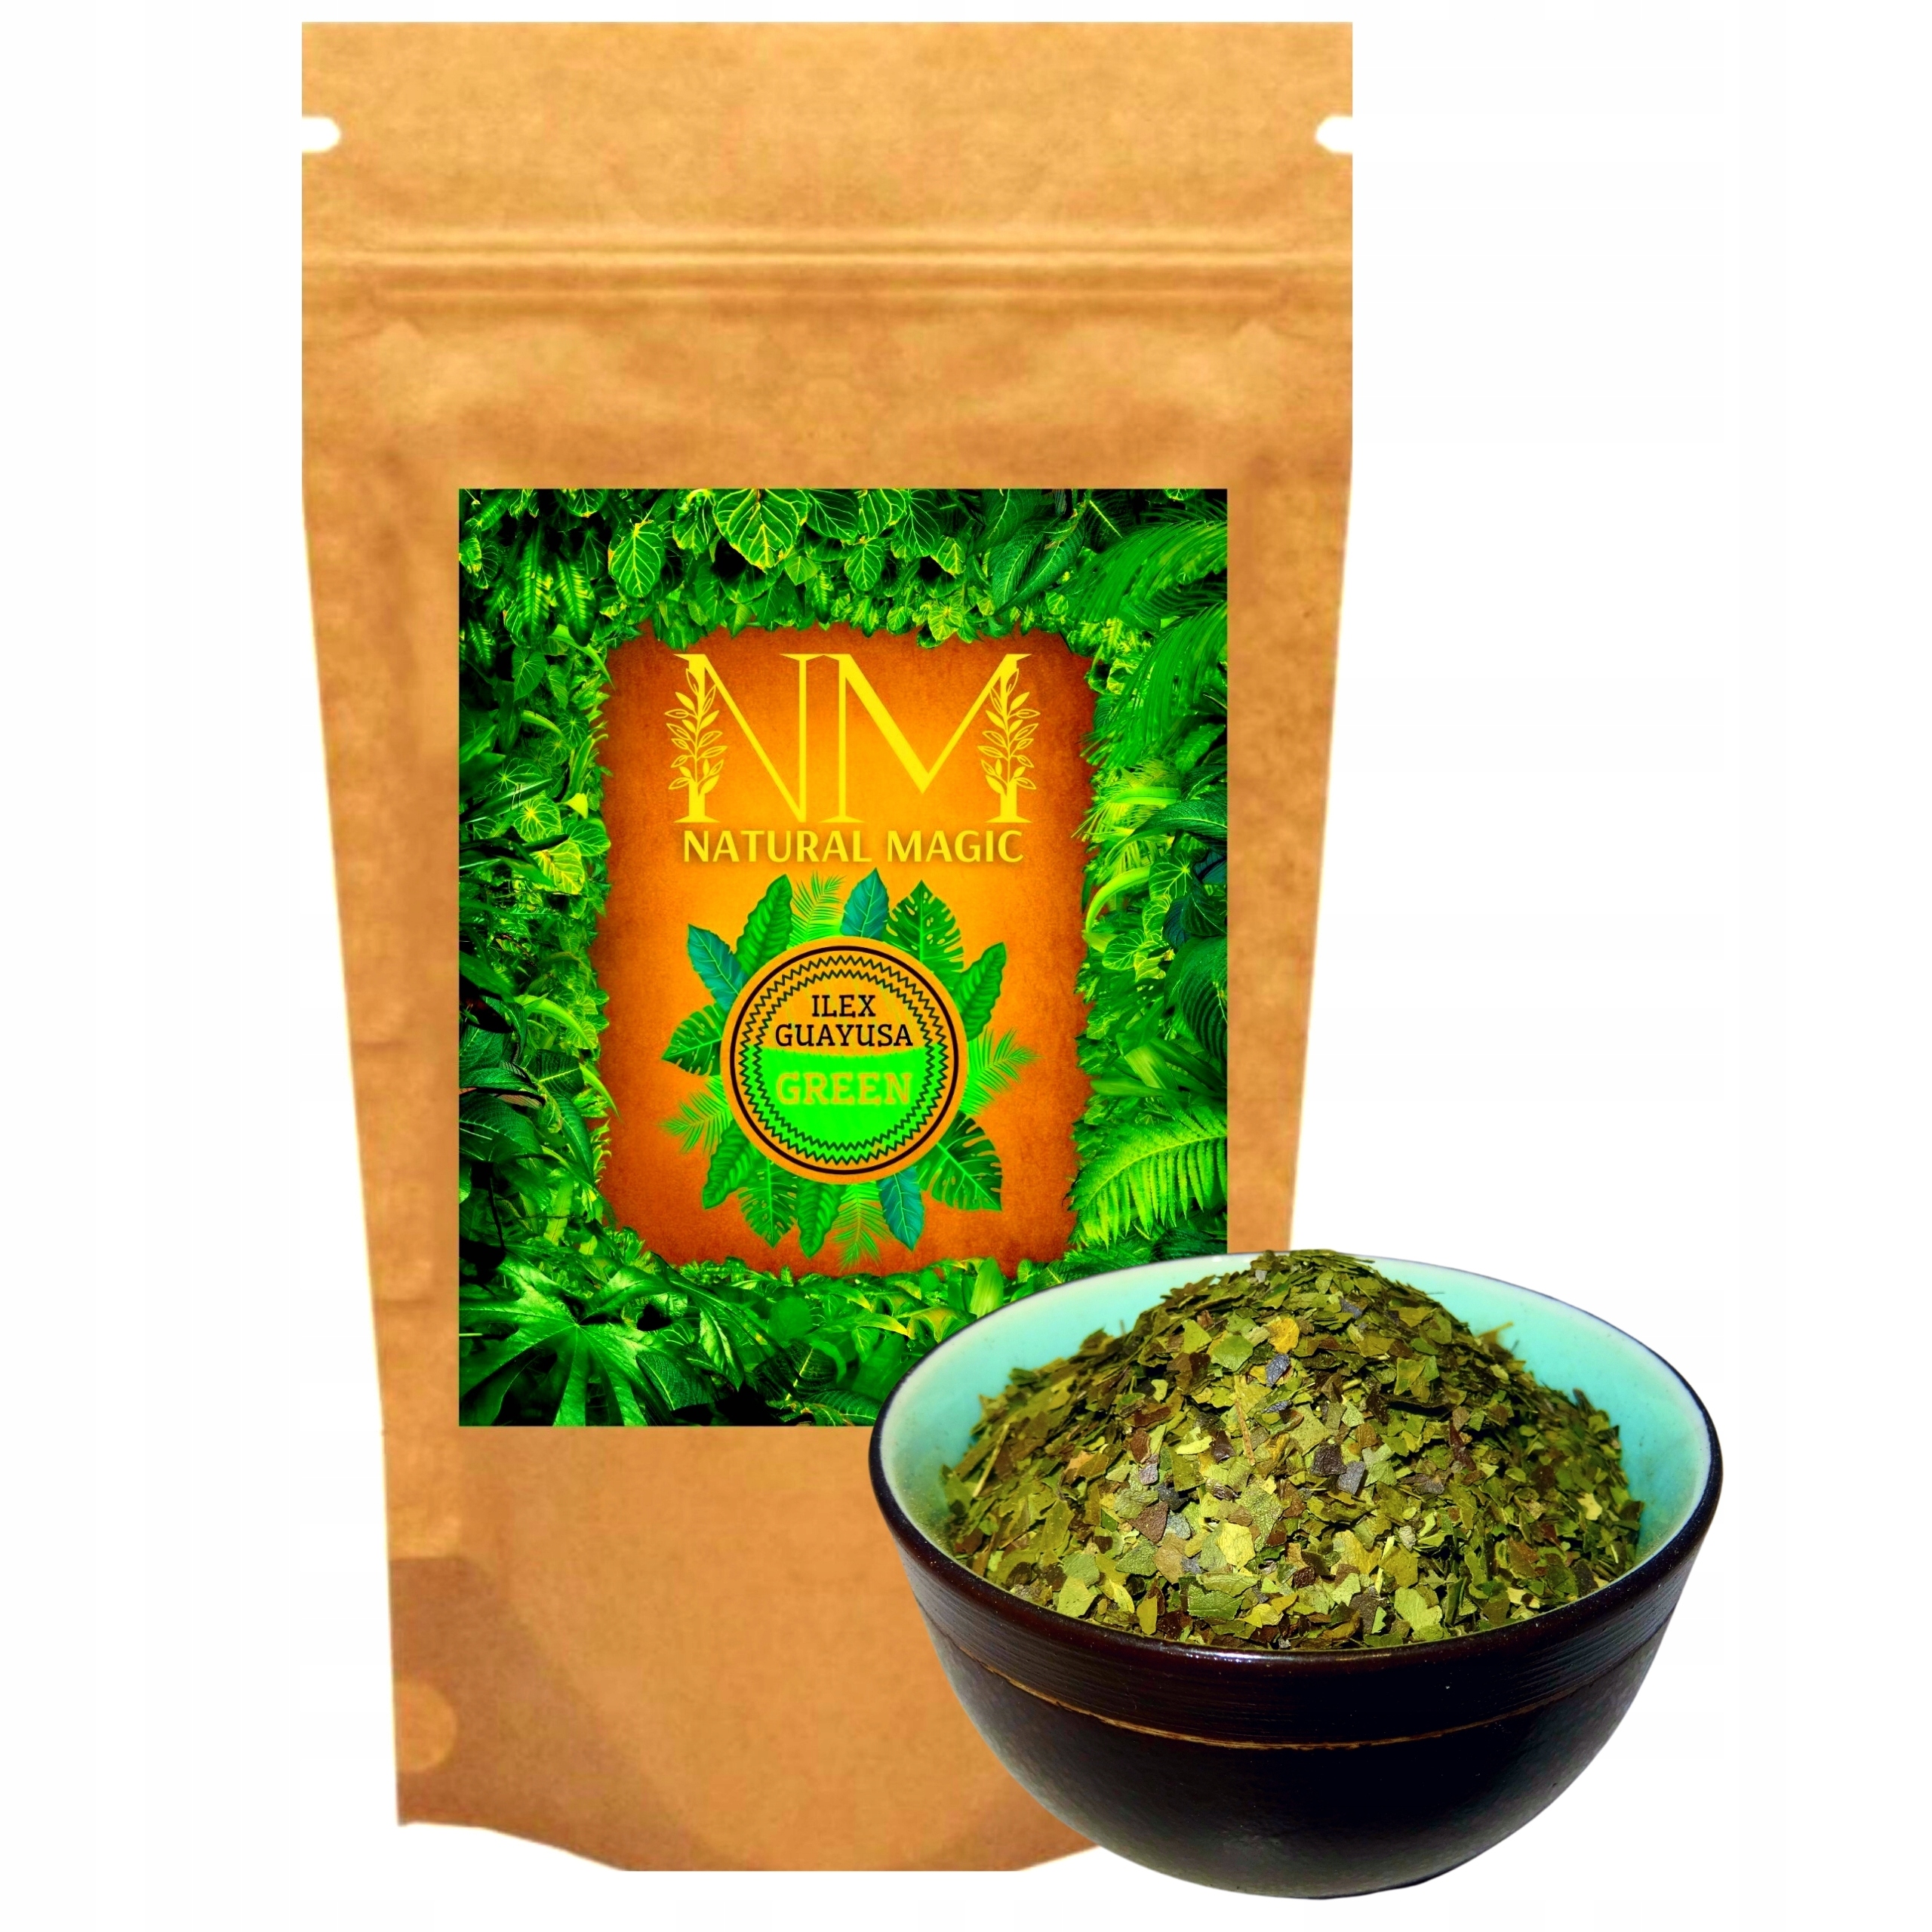 Ilex Guayusa Green 150g Natural Magic ZIELONA MOC Nazwa handlowa Guayusa Tea